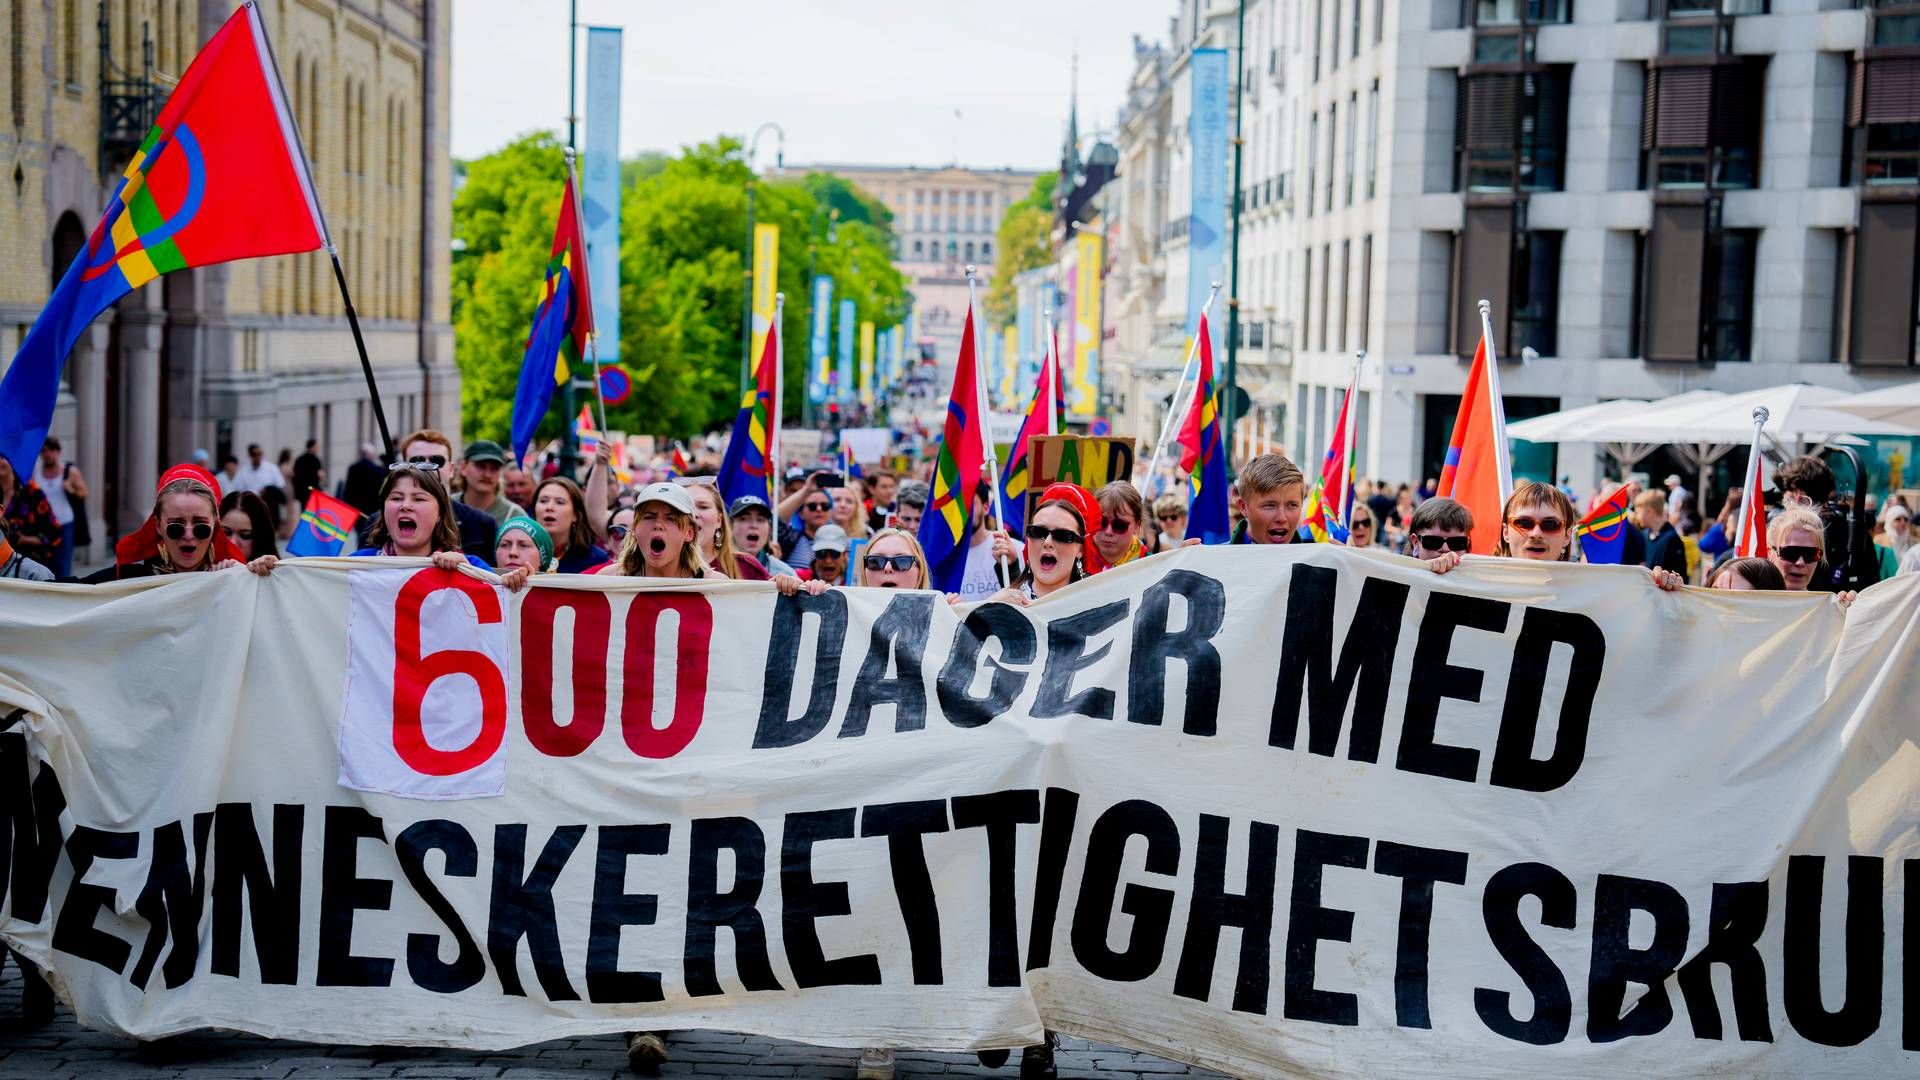 600 DAGER: Fosen-aktivister demonstrerte på dagen da det var 600 dager siden kjennelsen i Høyesterett, og de varsler ny aksjon om 100 dager. | Foto: Javad Parsa / NTB